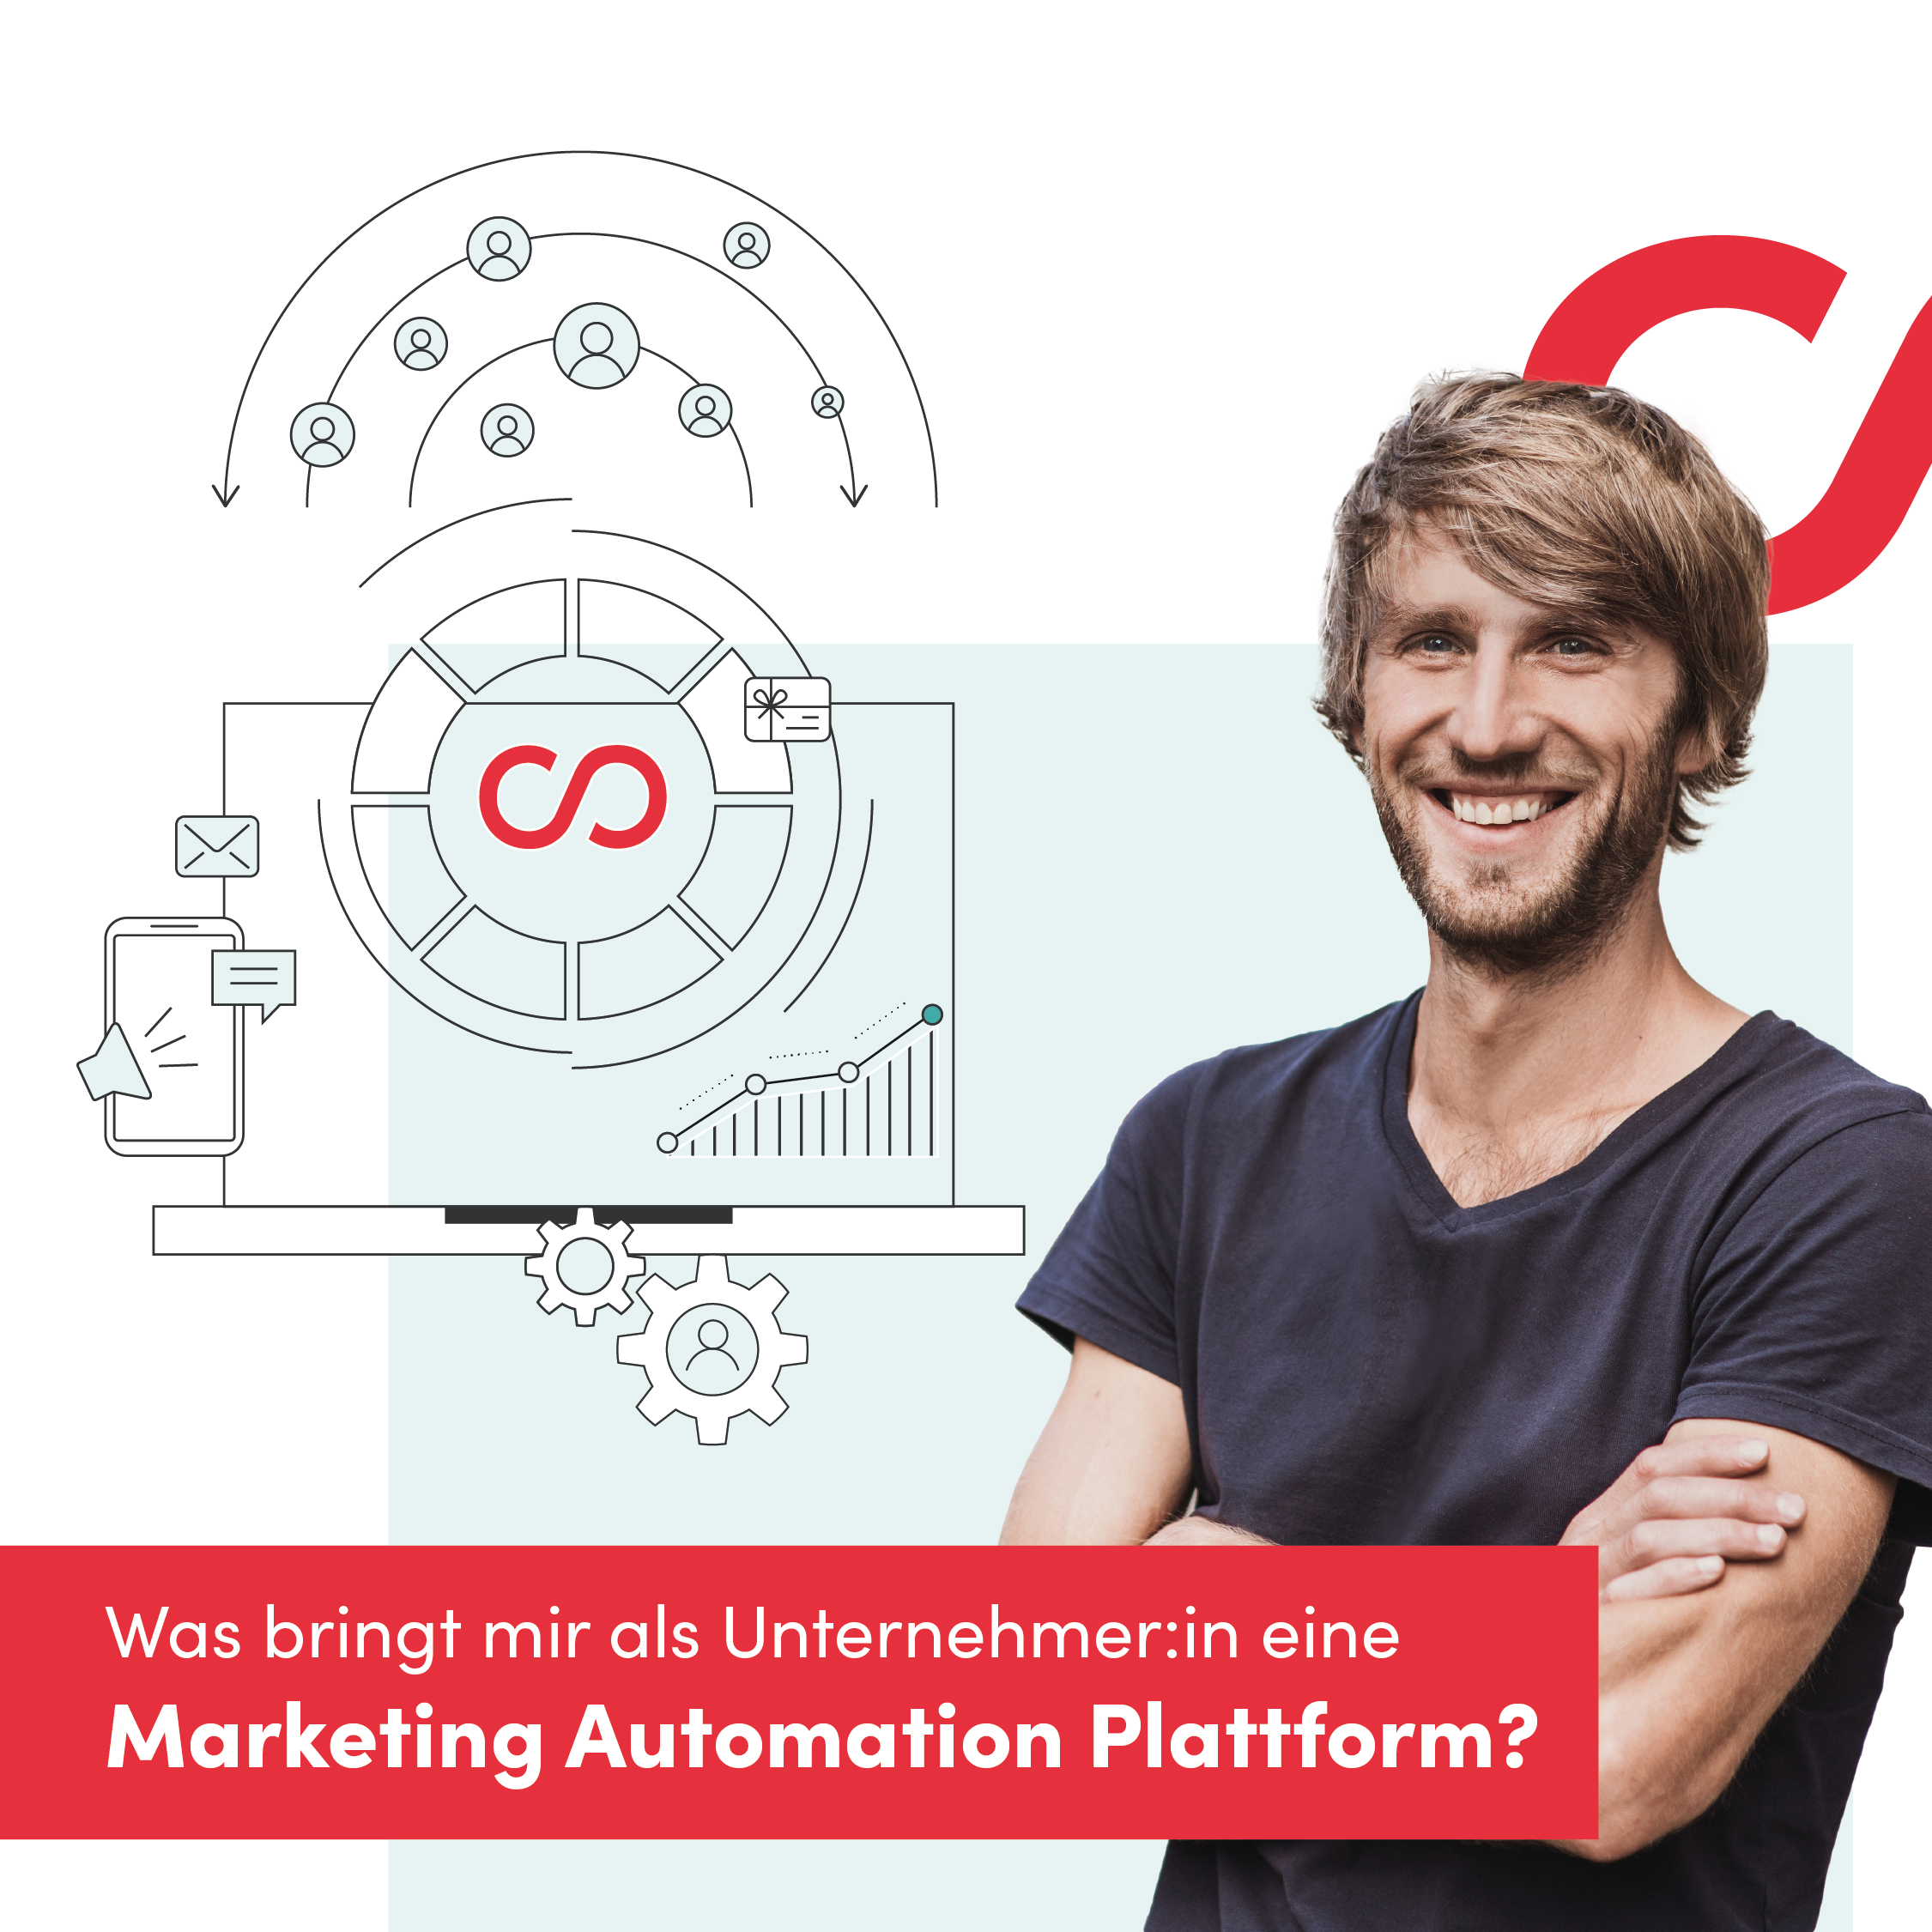 Welche Vorteile bietet eine Marketing Automation Plattform wie die von Jolioo für Unternehmen?